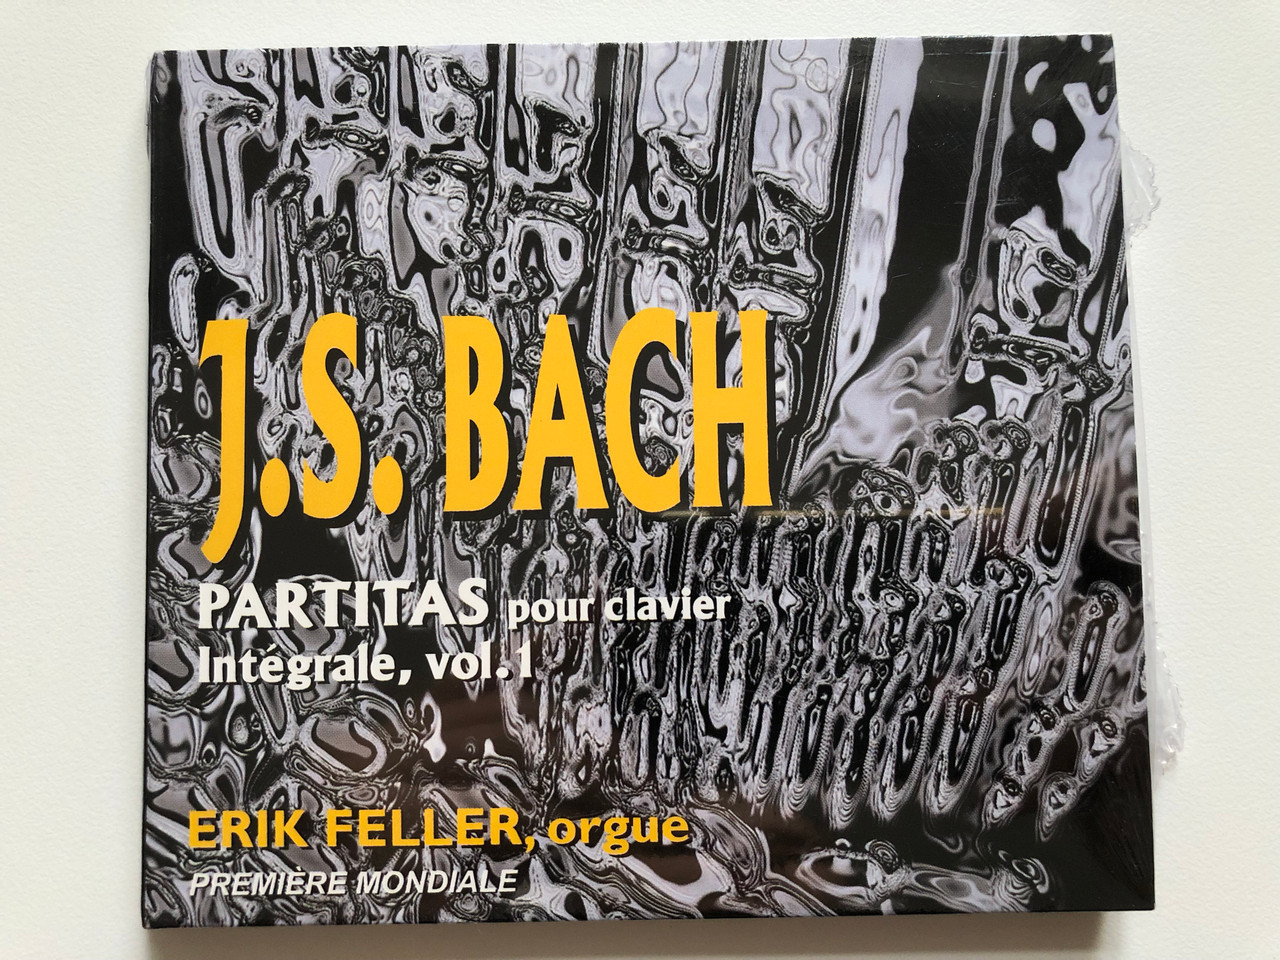 J. S. Bach - Partitas pour clavier, Integrale, vol. 1 / Erik Feller, orgue  / Premiere Moniale / Arion Audio CD 2000 / ARN 68503 - bibleinmylanguage